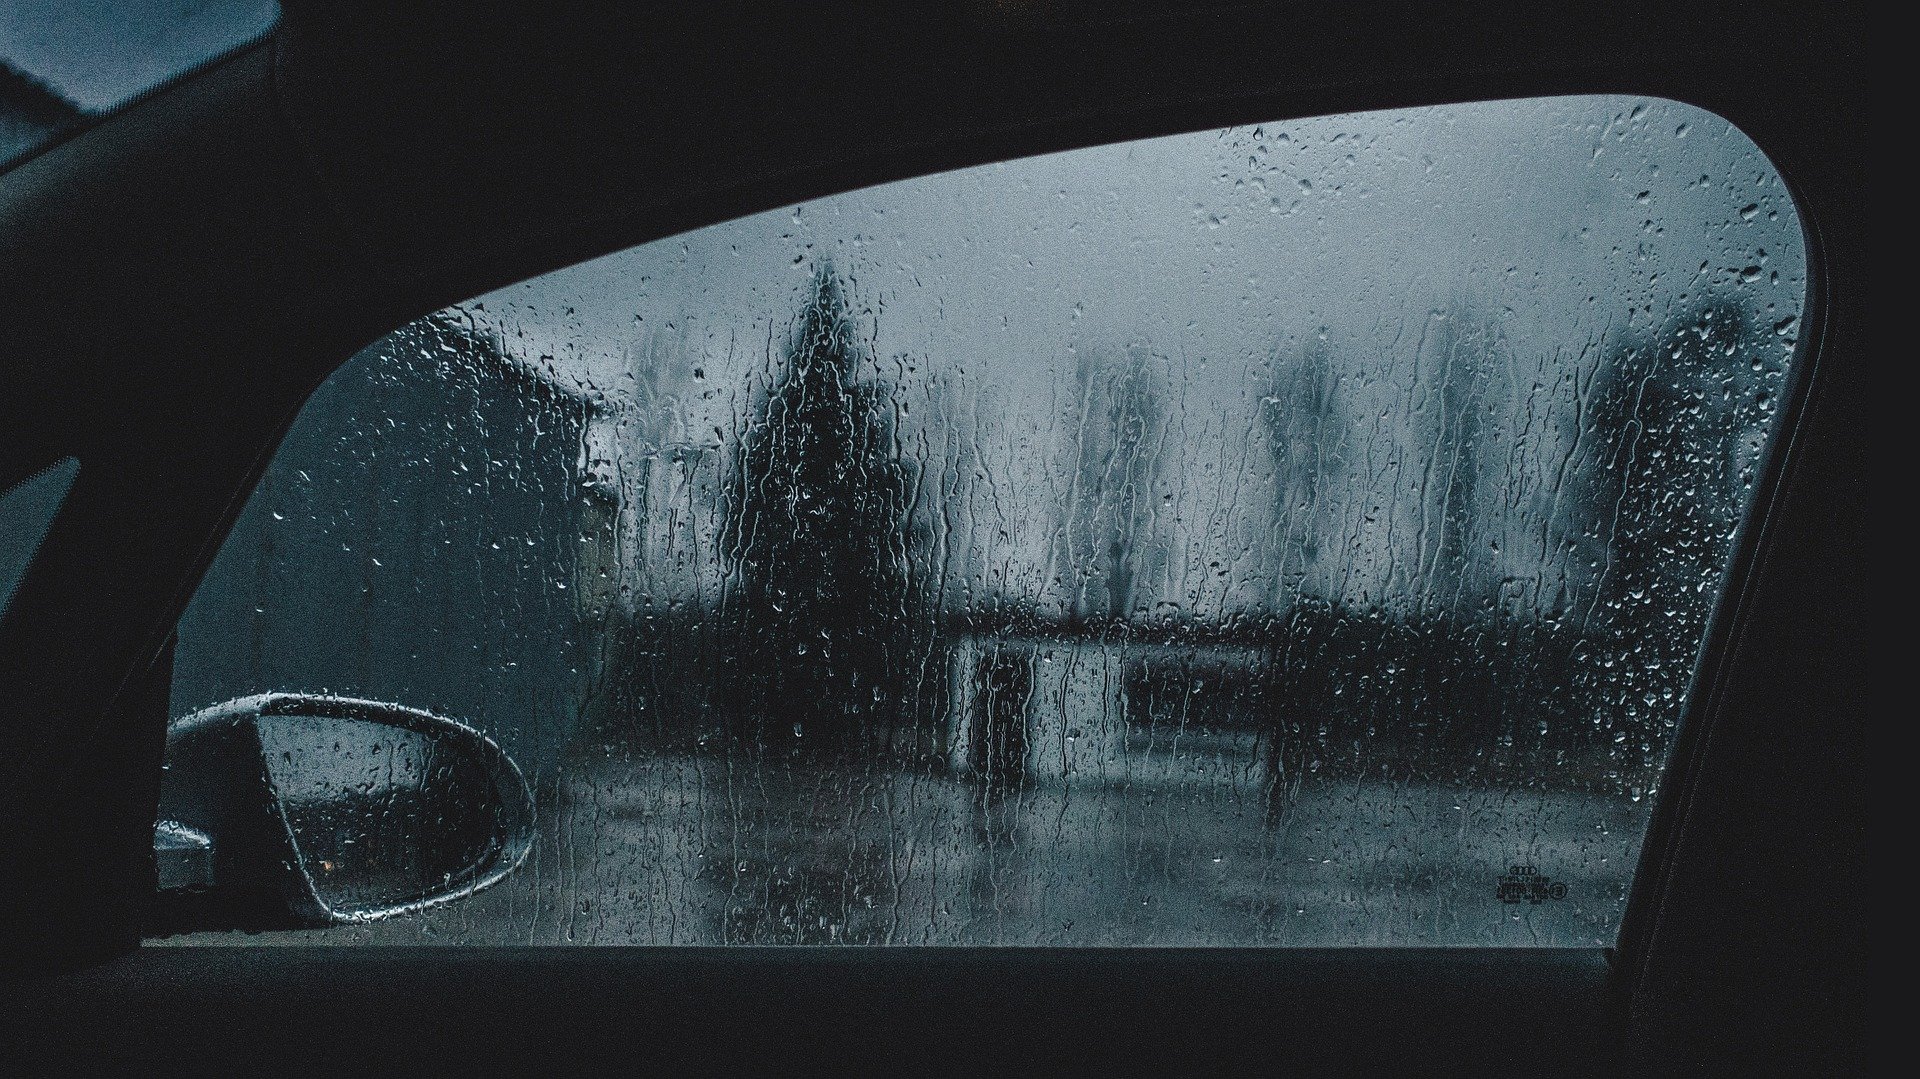 Foto da janela de um carro em noite de chuva. Imagem ilustrativa para o texto remover manchas de chuva ácida do vidro.